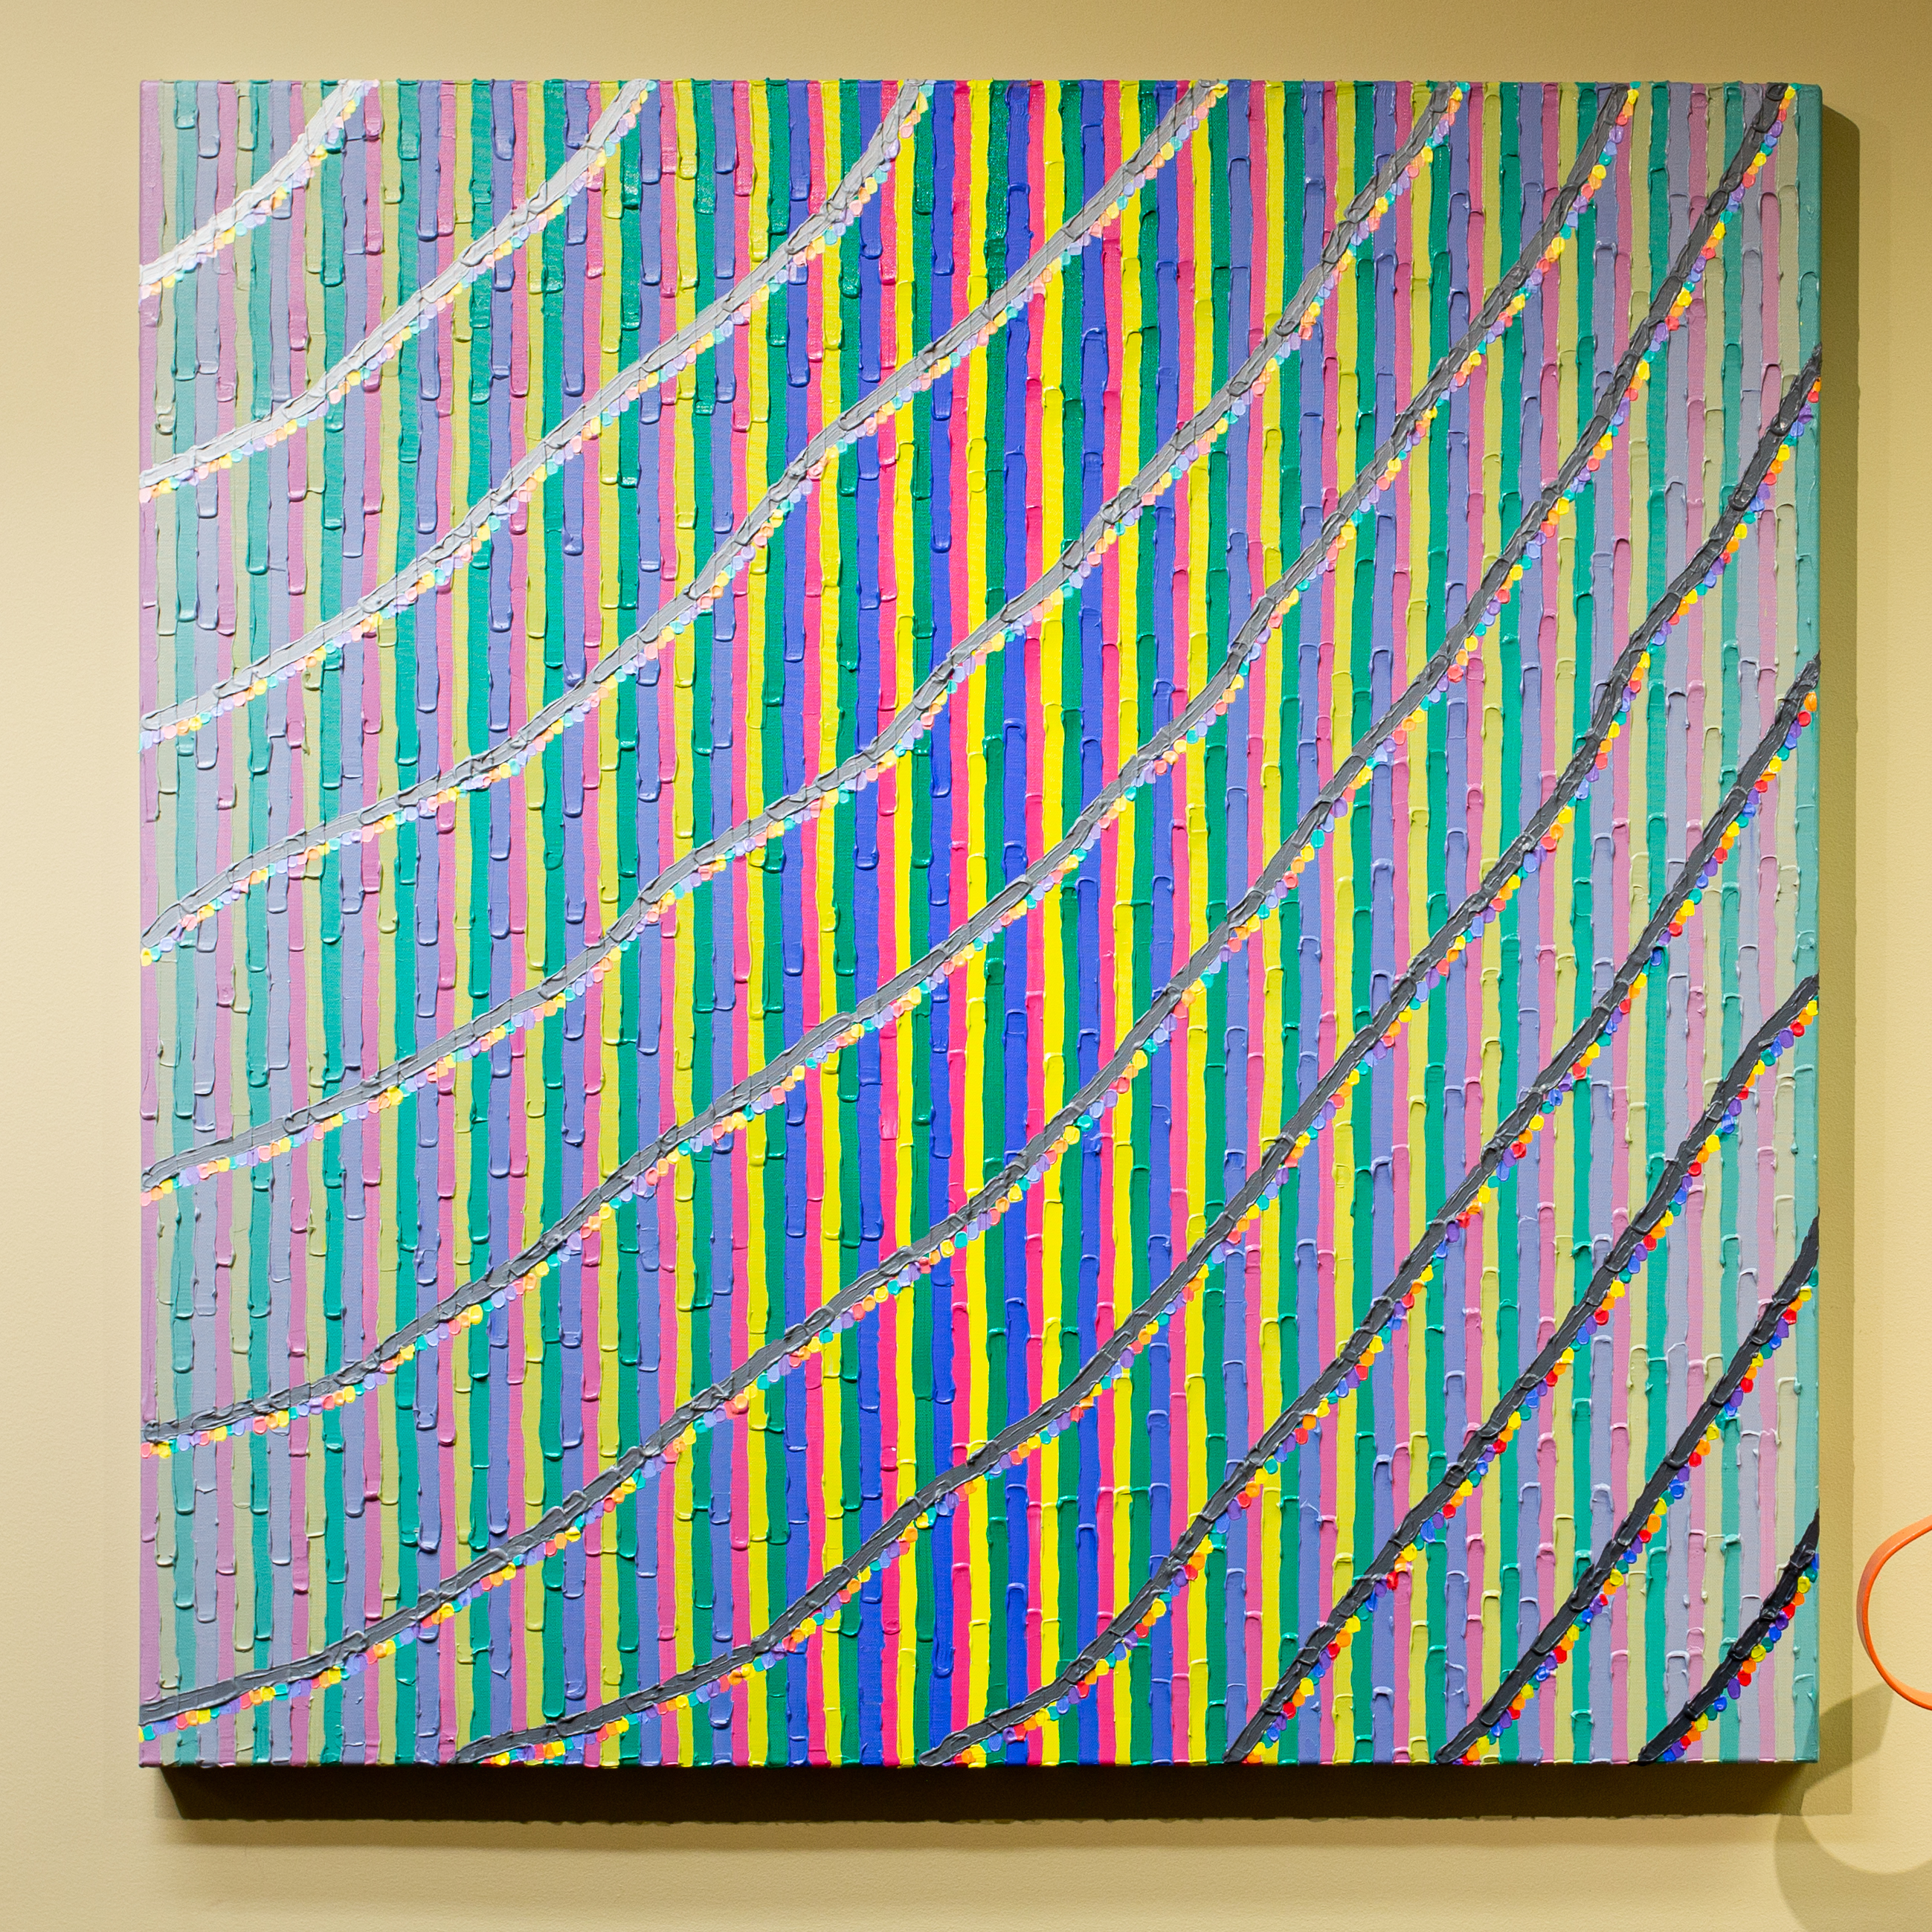 Brianna Bass, Dream Queue II, 36" x 36" x 1.5", acrylic on canvas, 2019